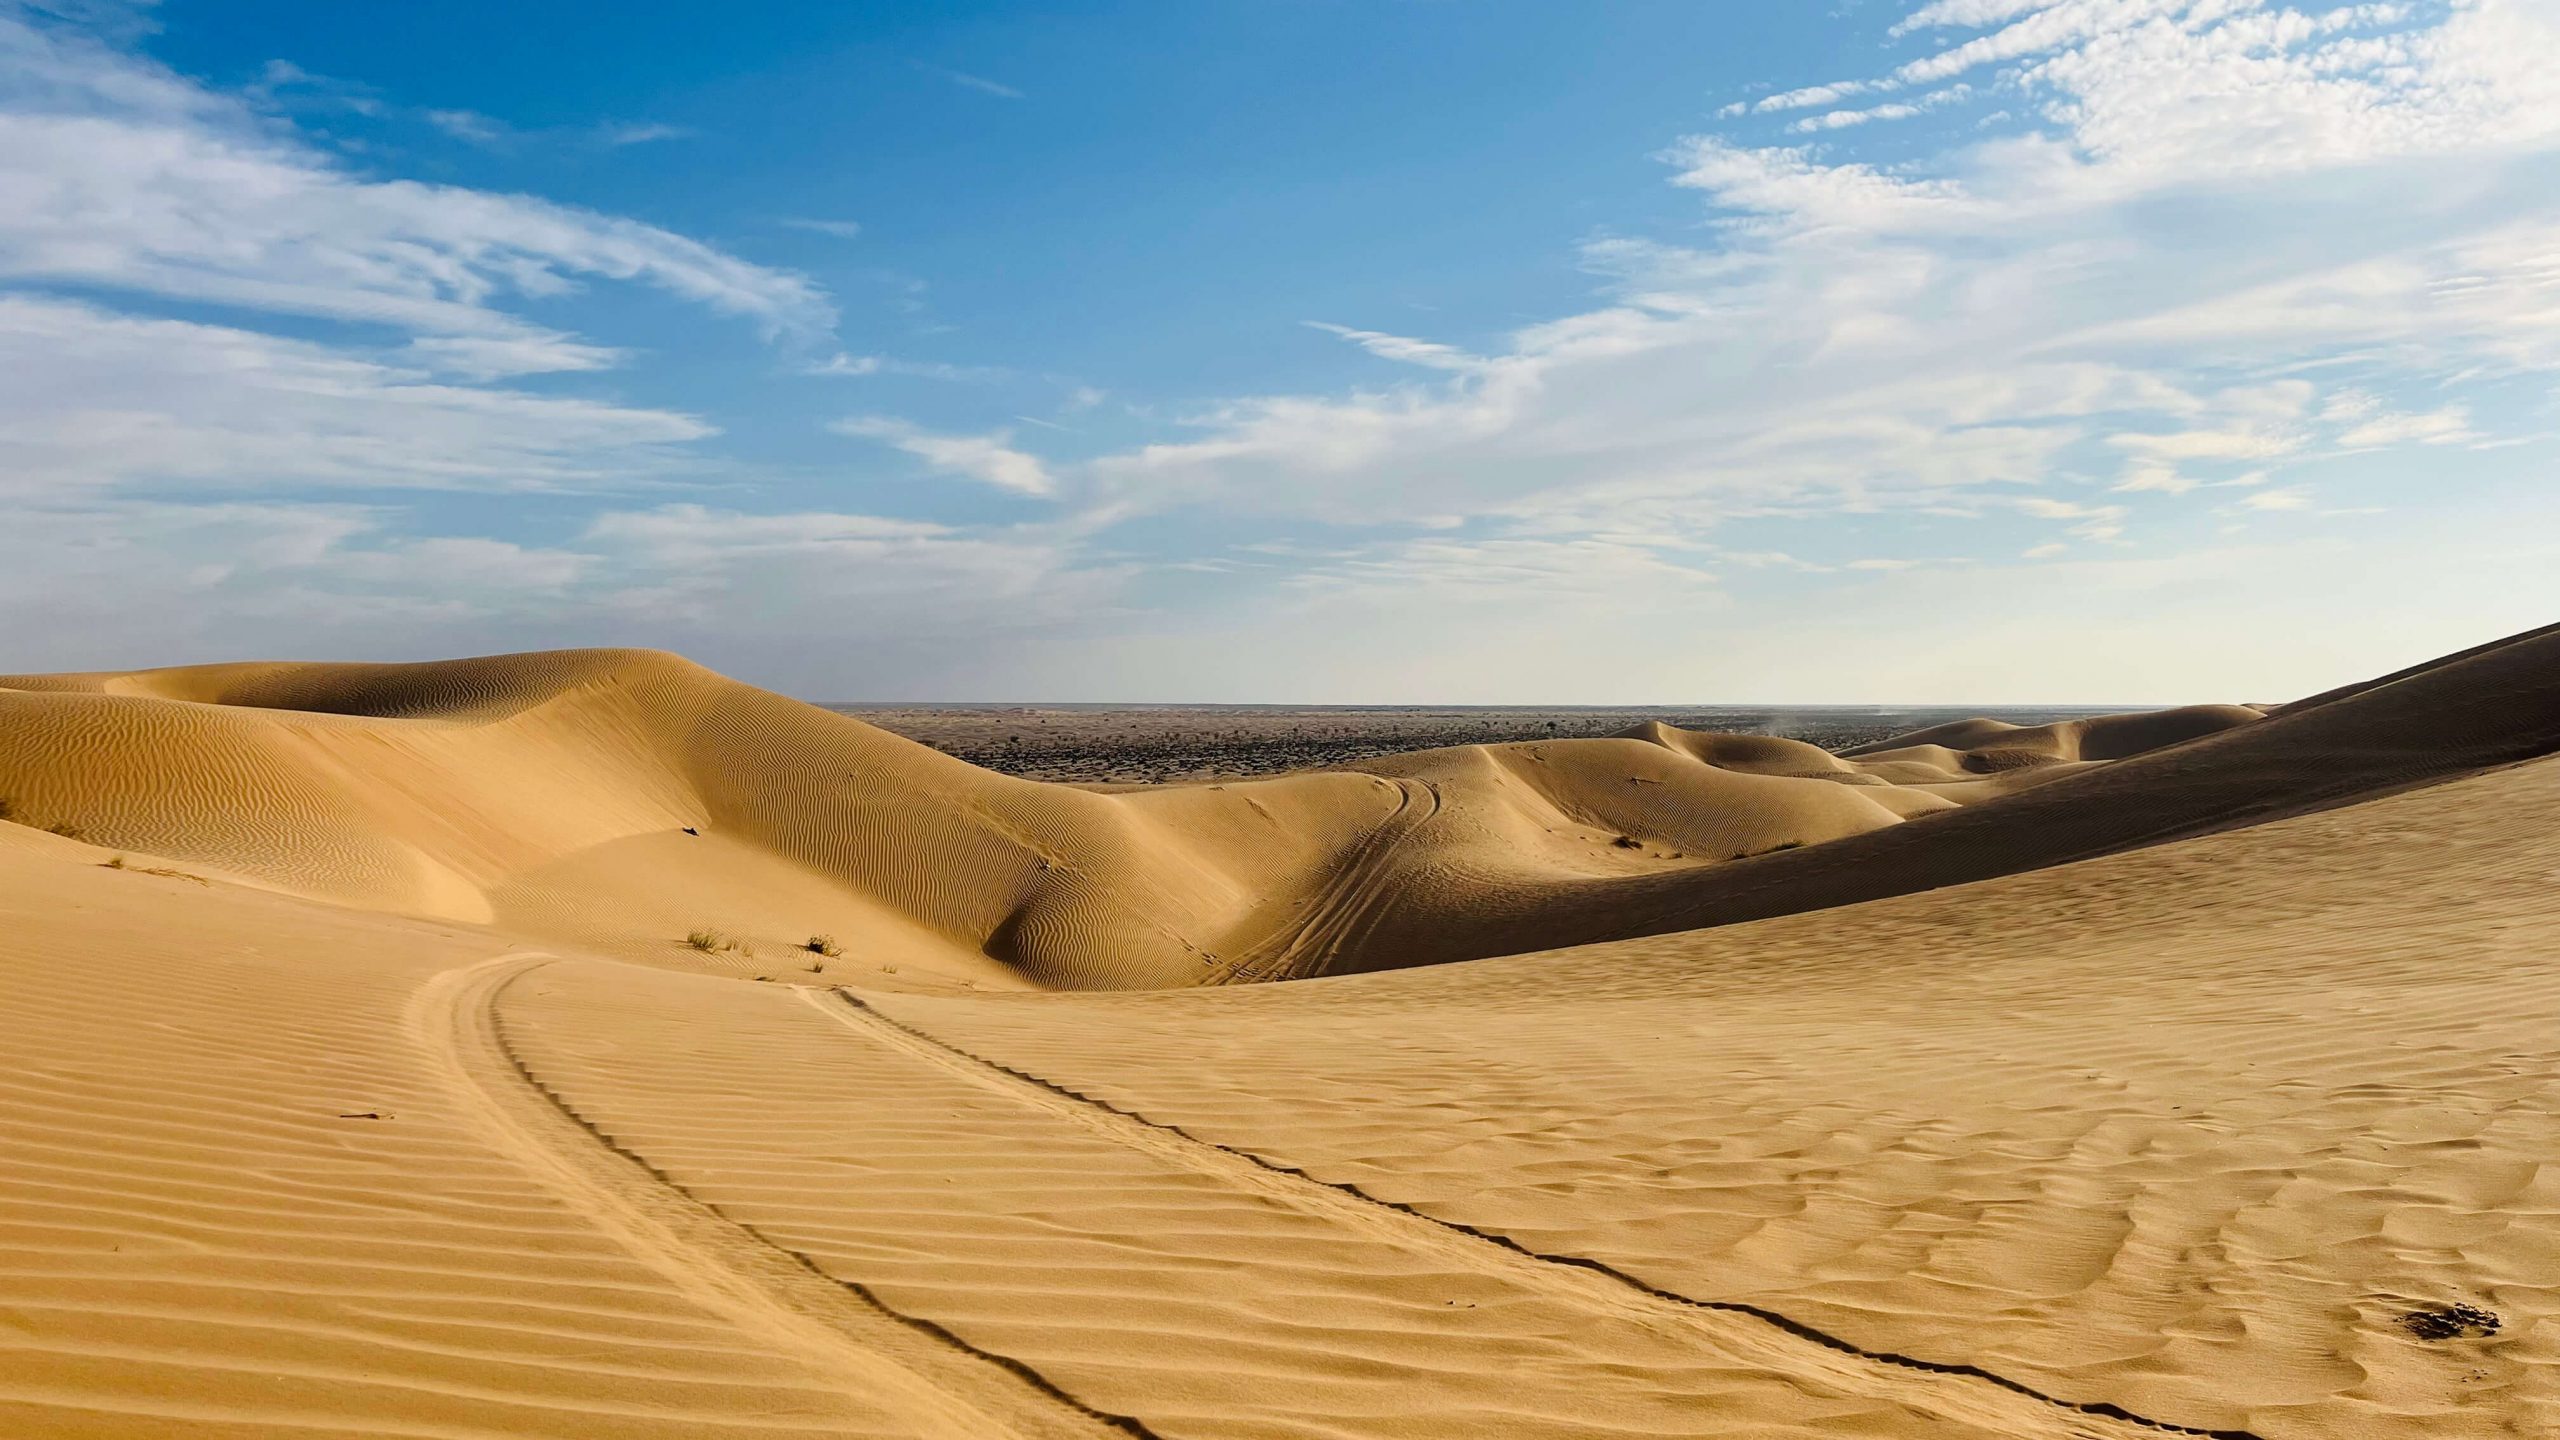 Salalah Desert Dunes with blue sky